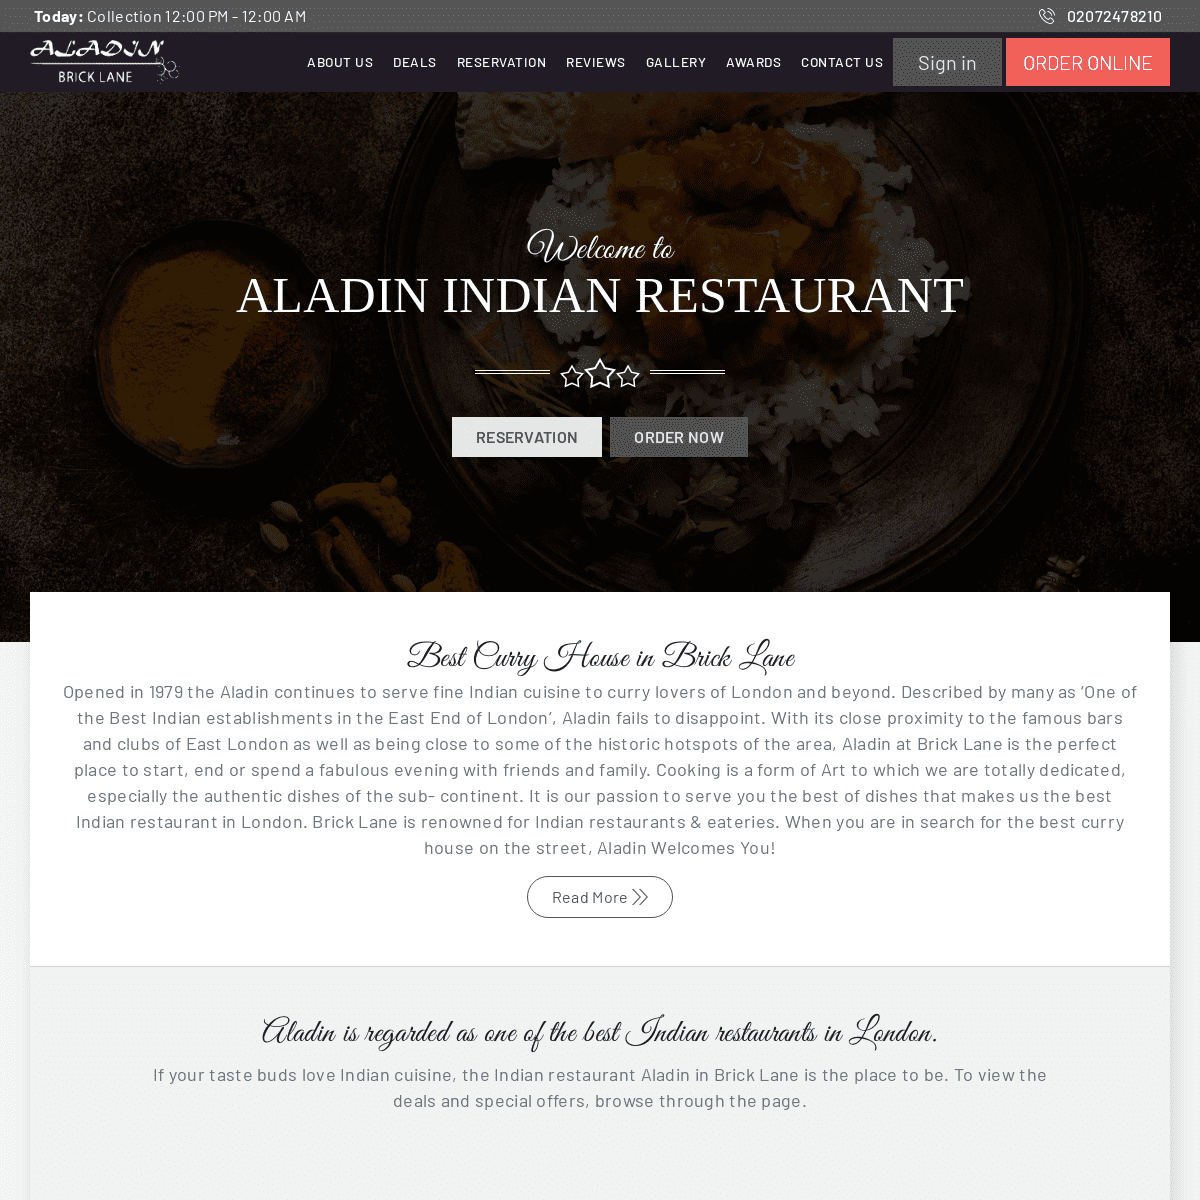 A complete backup of aladinbricklane.co.uk